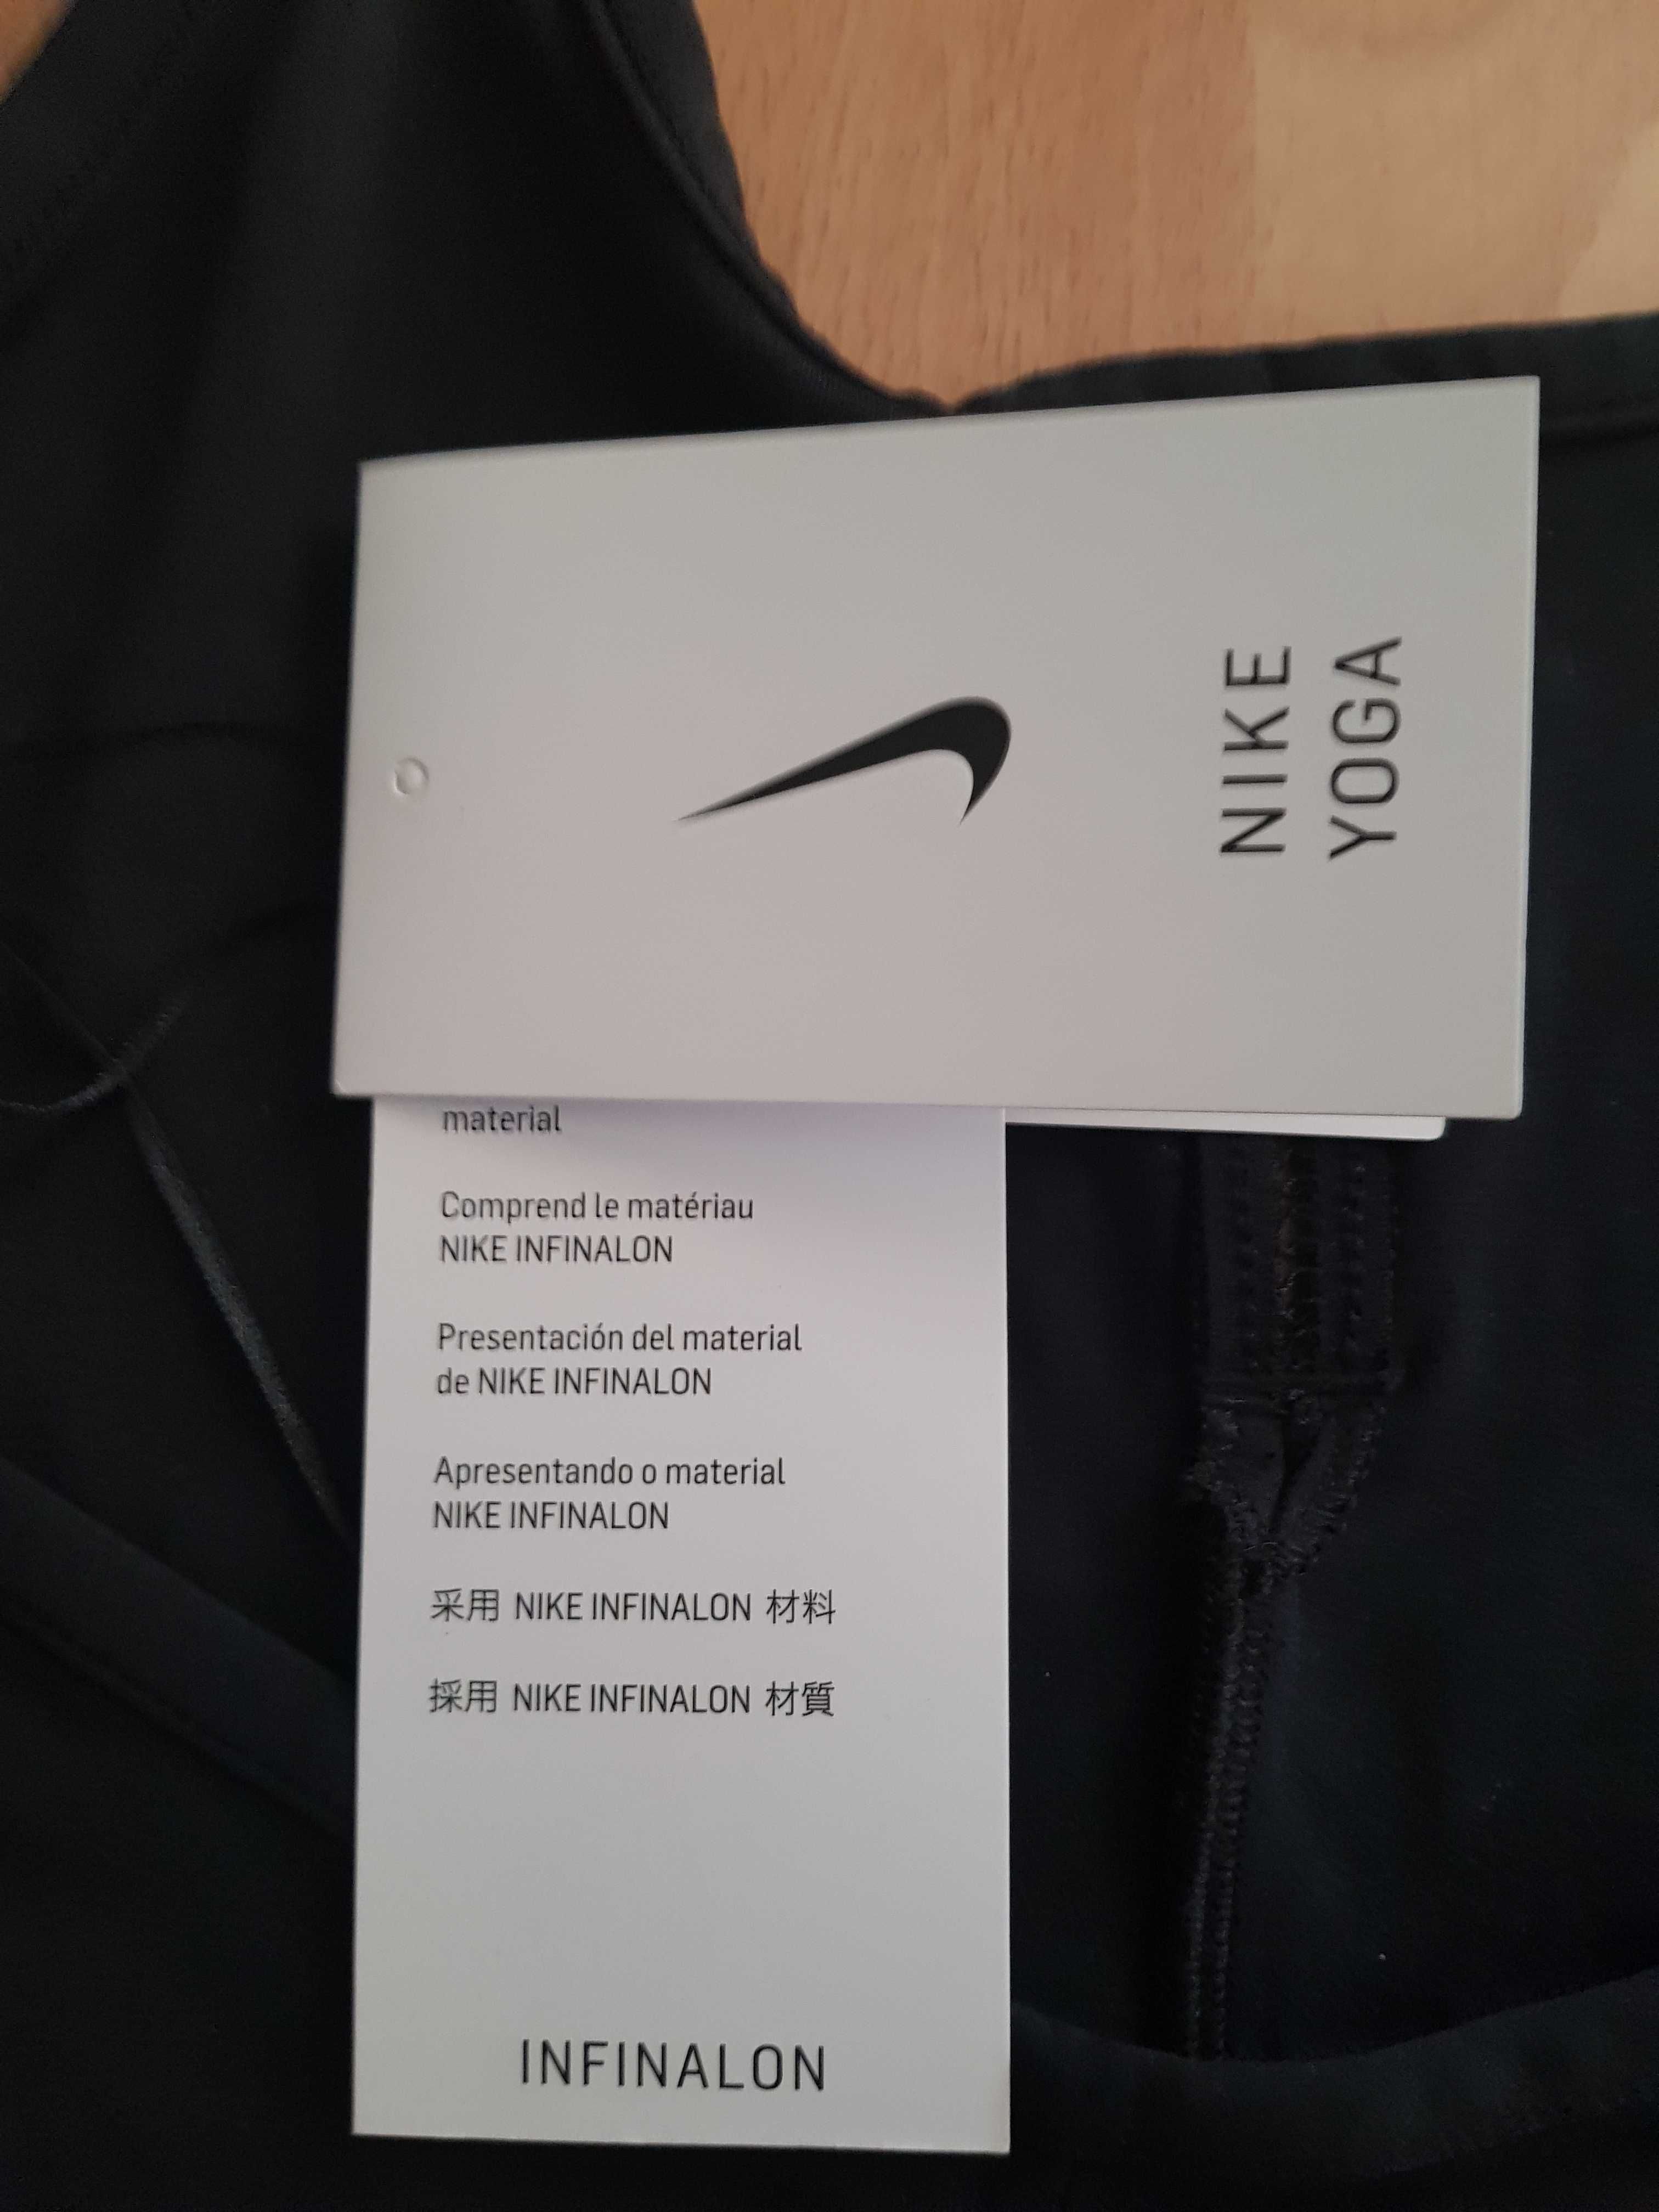 Body treningowe firmy Nike rozmiar S.